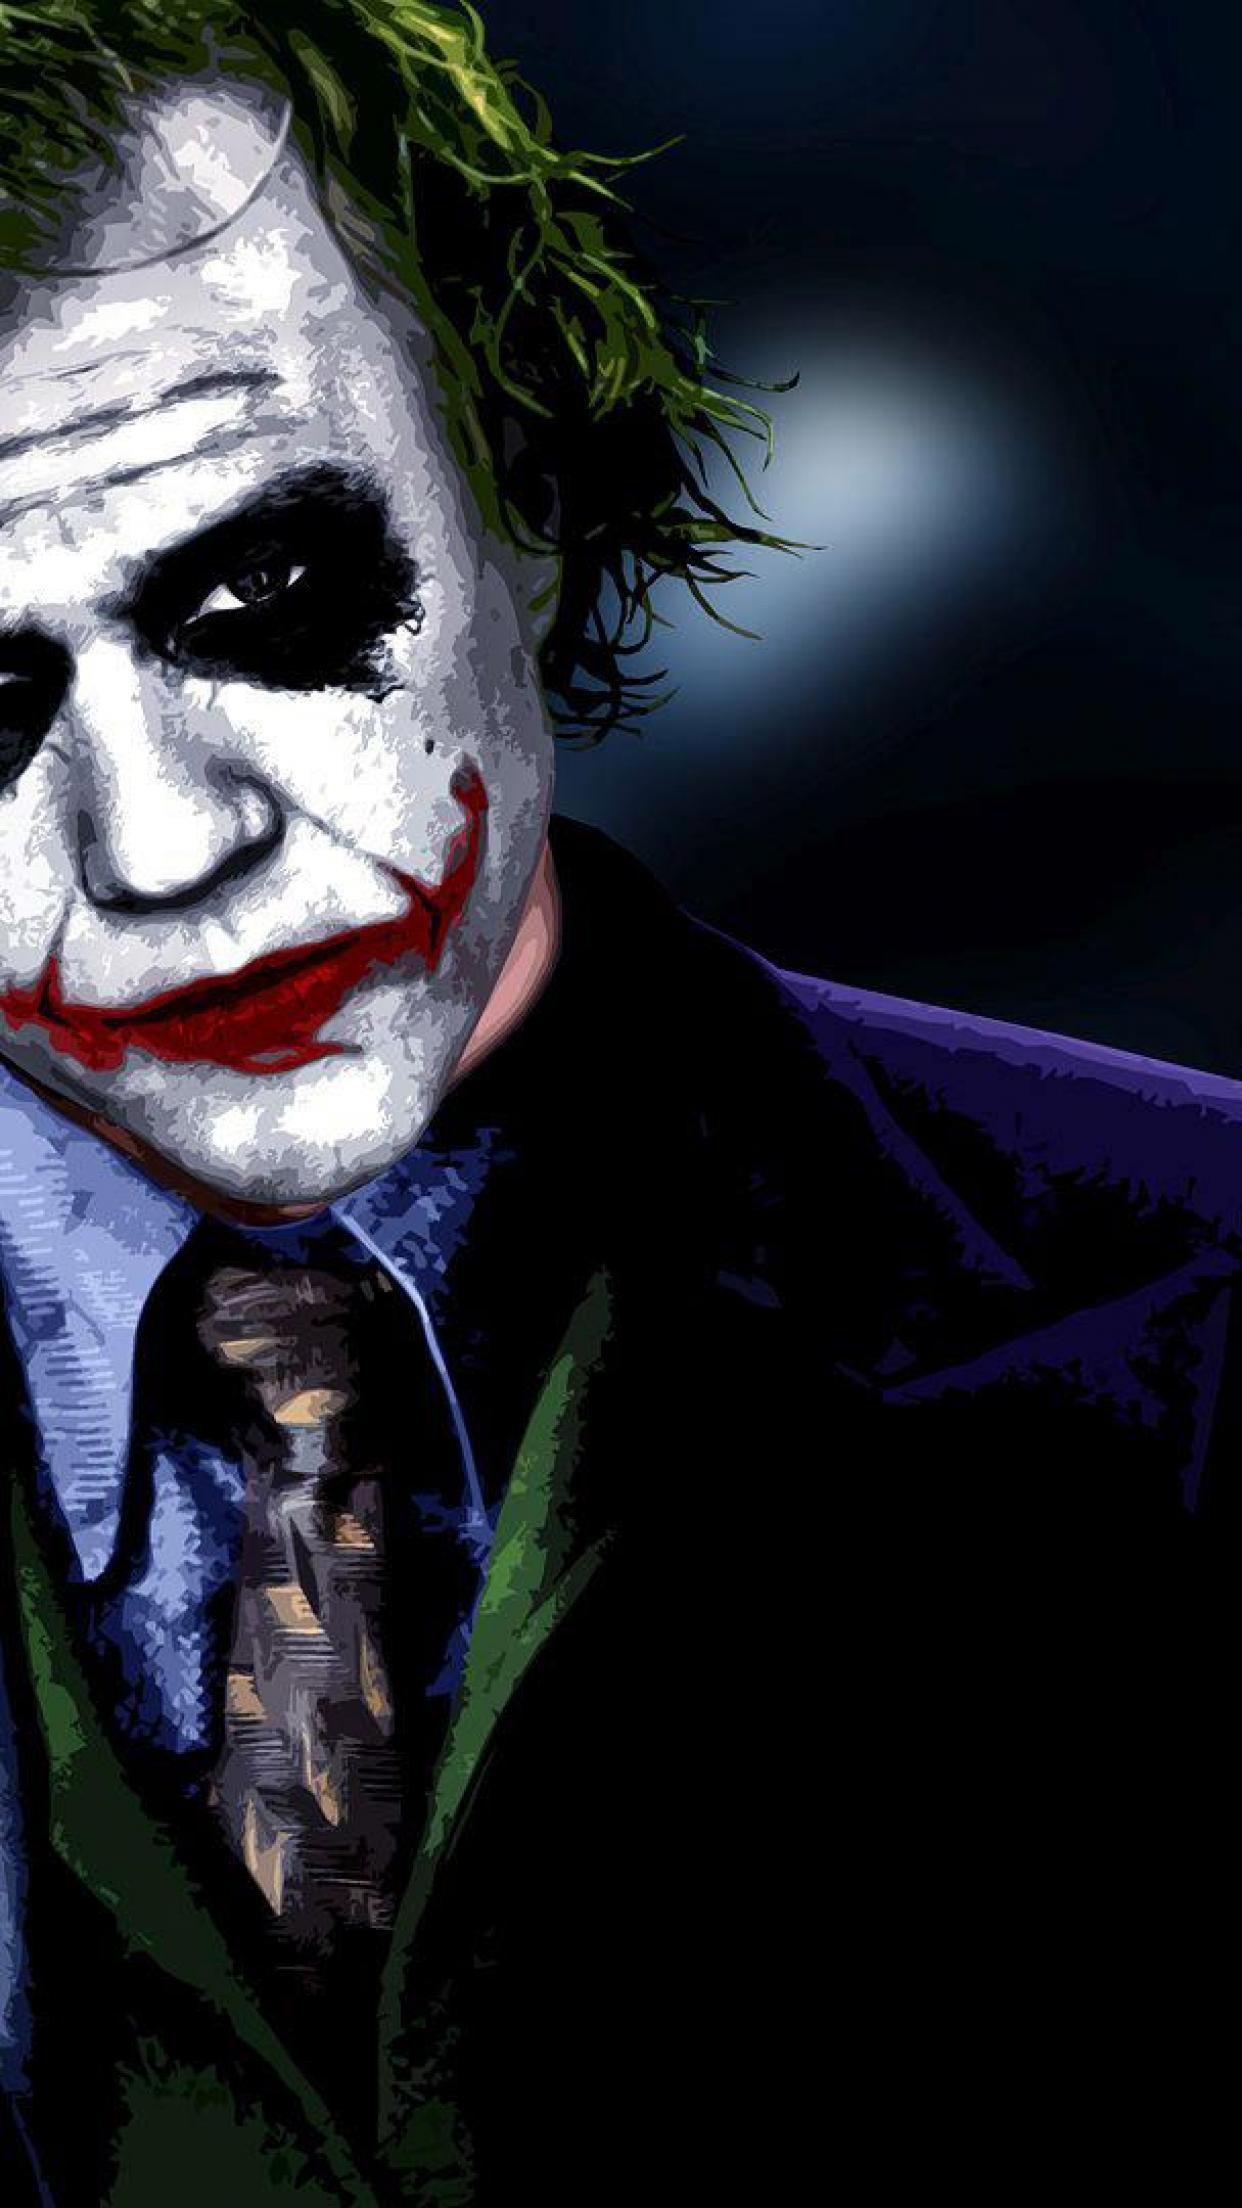 Joker Why So Serious Wallpaper